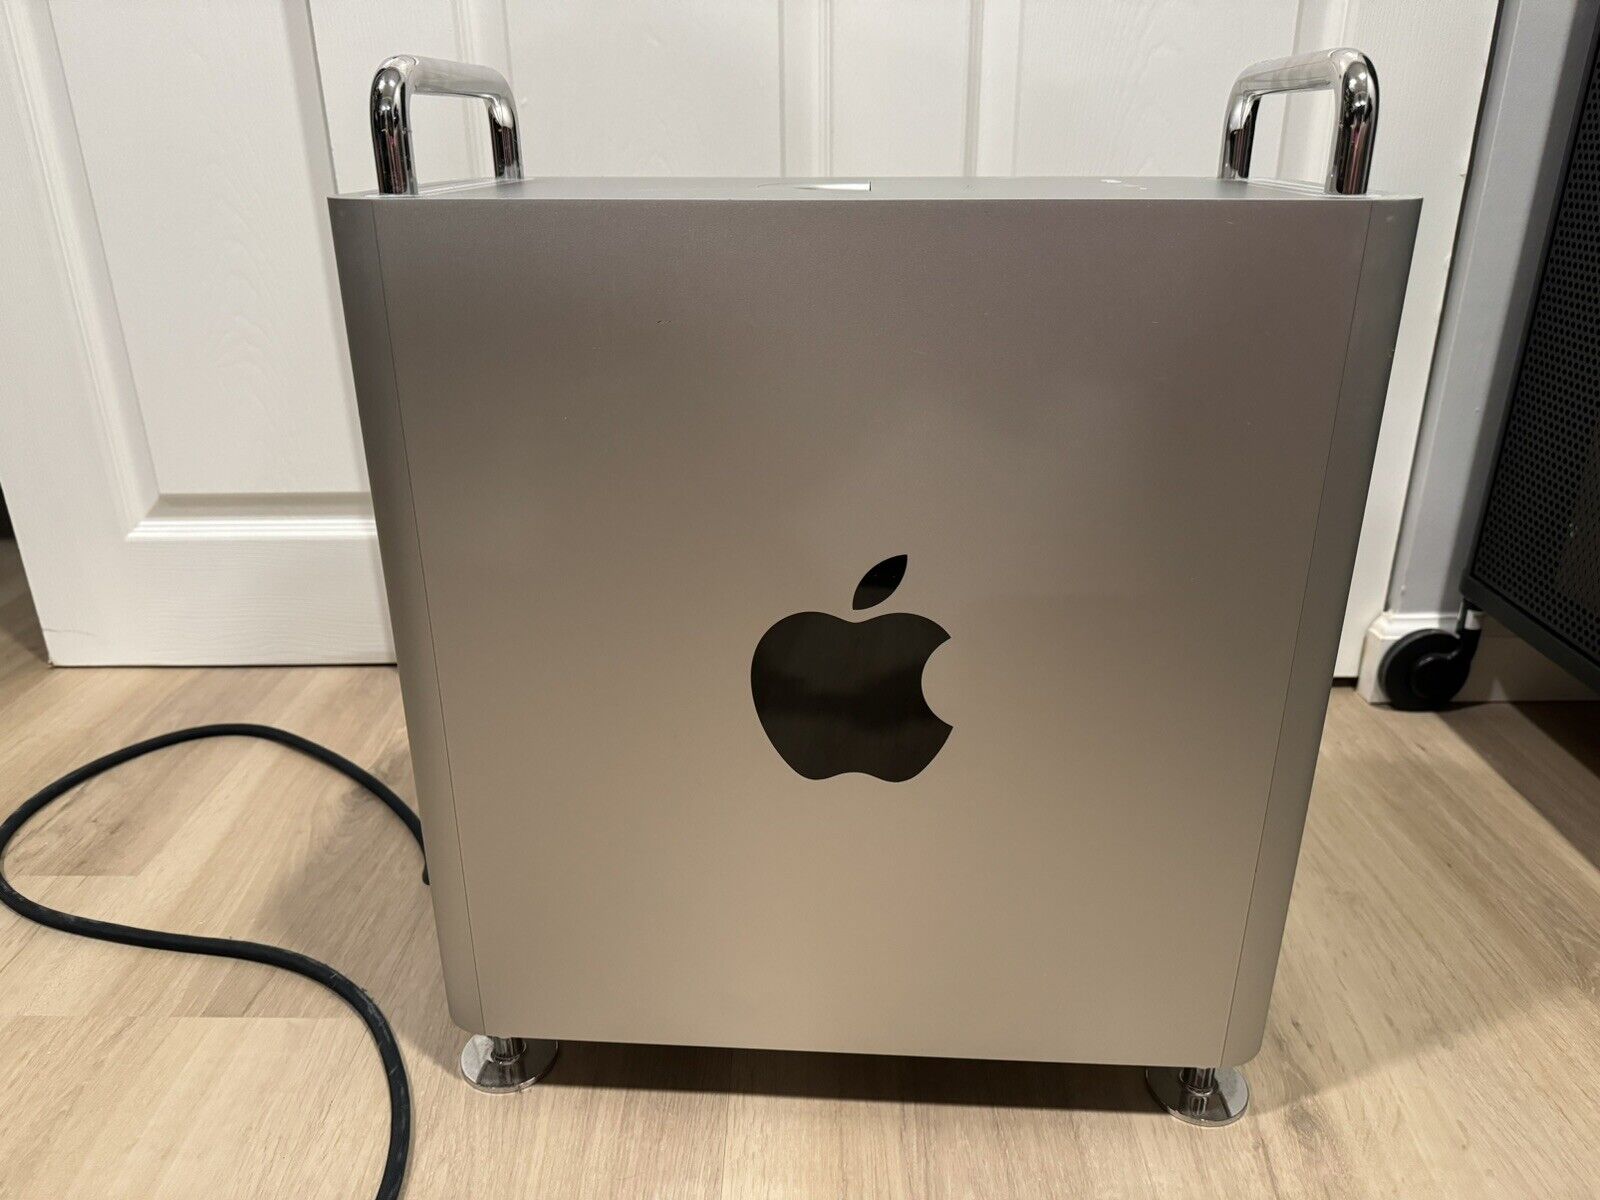 Apple Mac Pro 2019 3.5 ghz 8-core intel xeon w 128GB Ram 1TB SSD W/ Afterburner